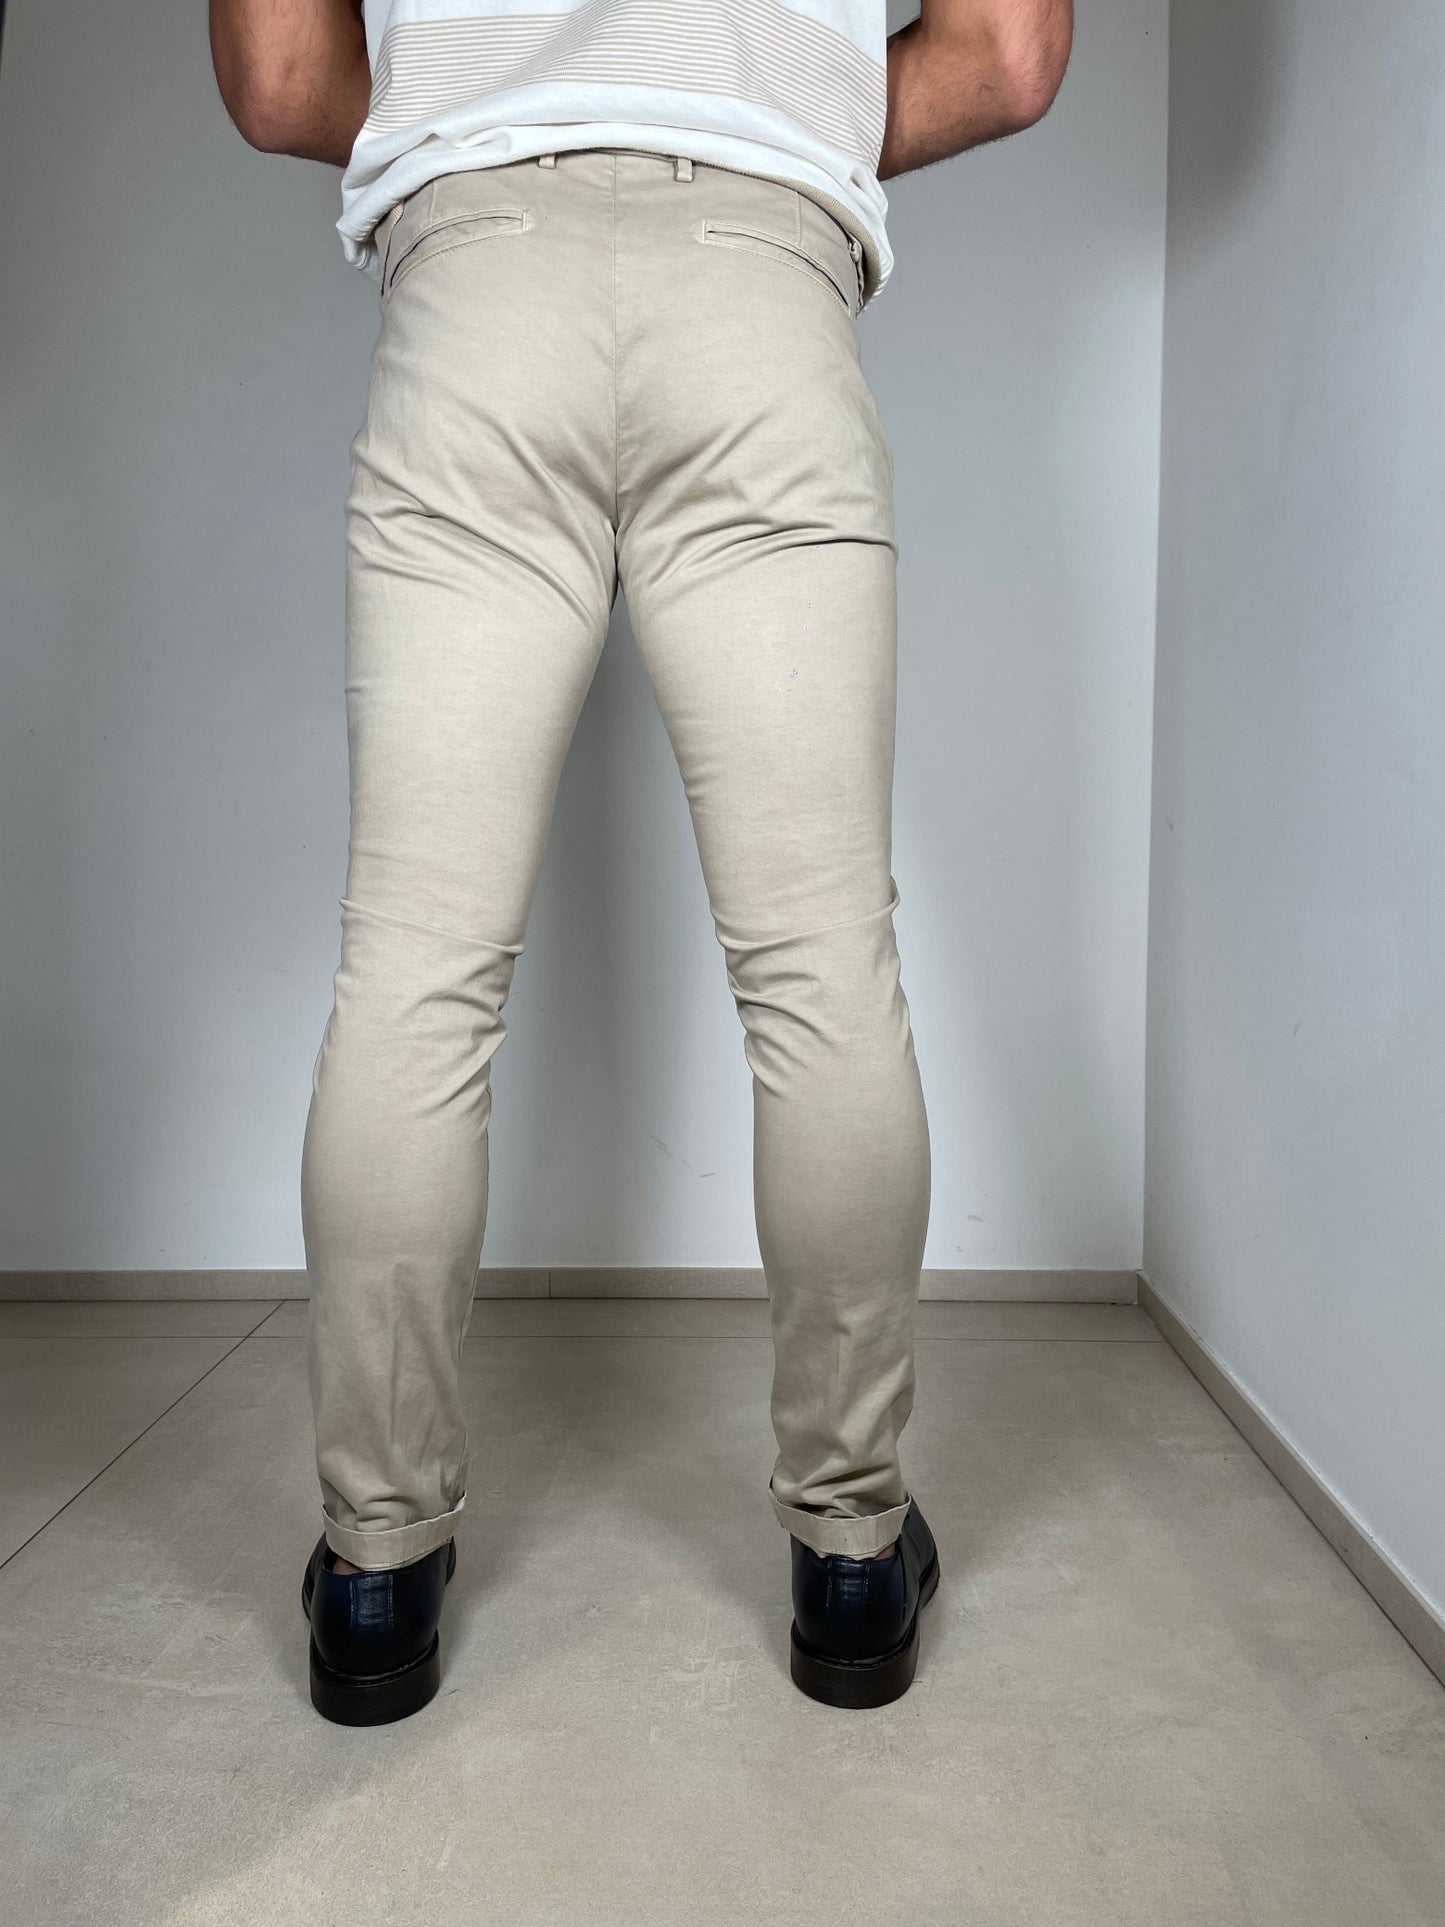 Giglio Milano Pantalone Modello 500/181